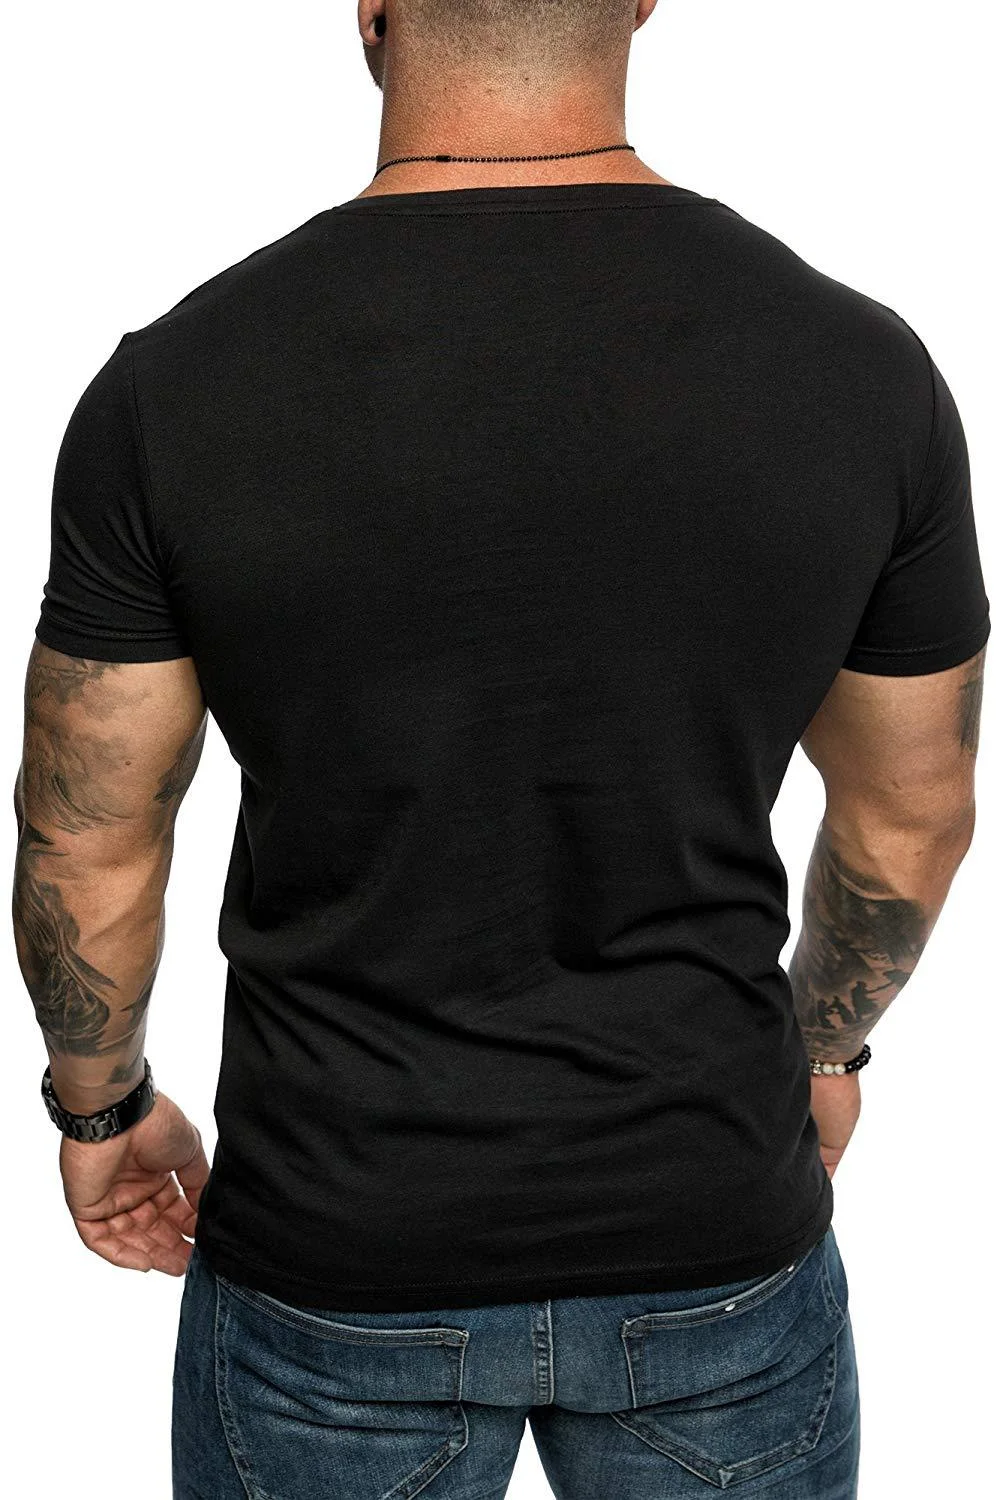 Men's Solid Color T-Shirt Slim Pocket Sports Short-Sleeved Clothing